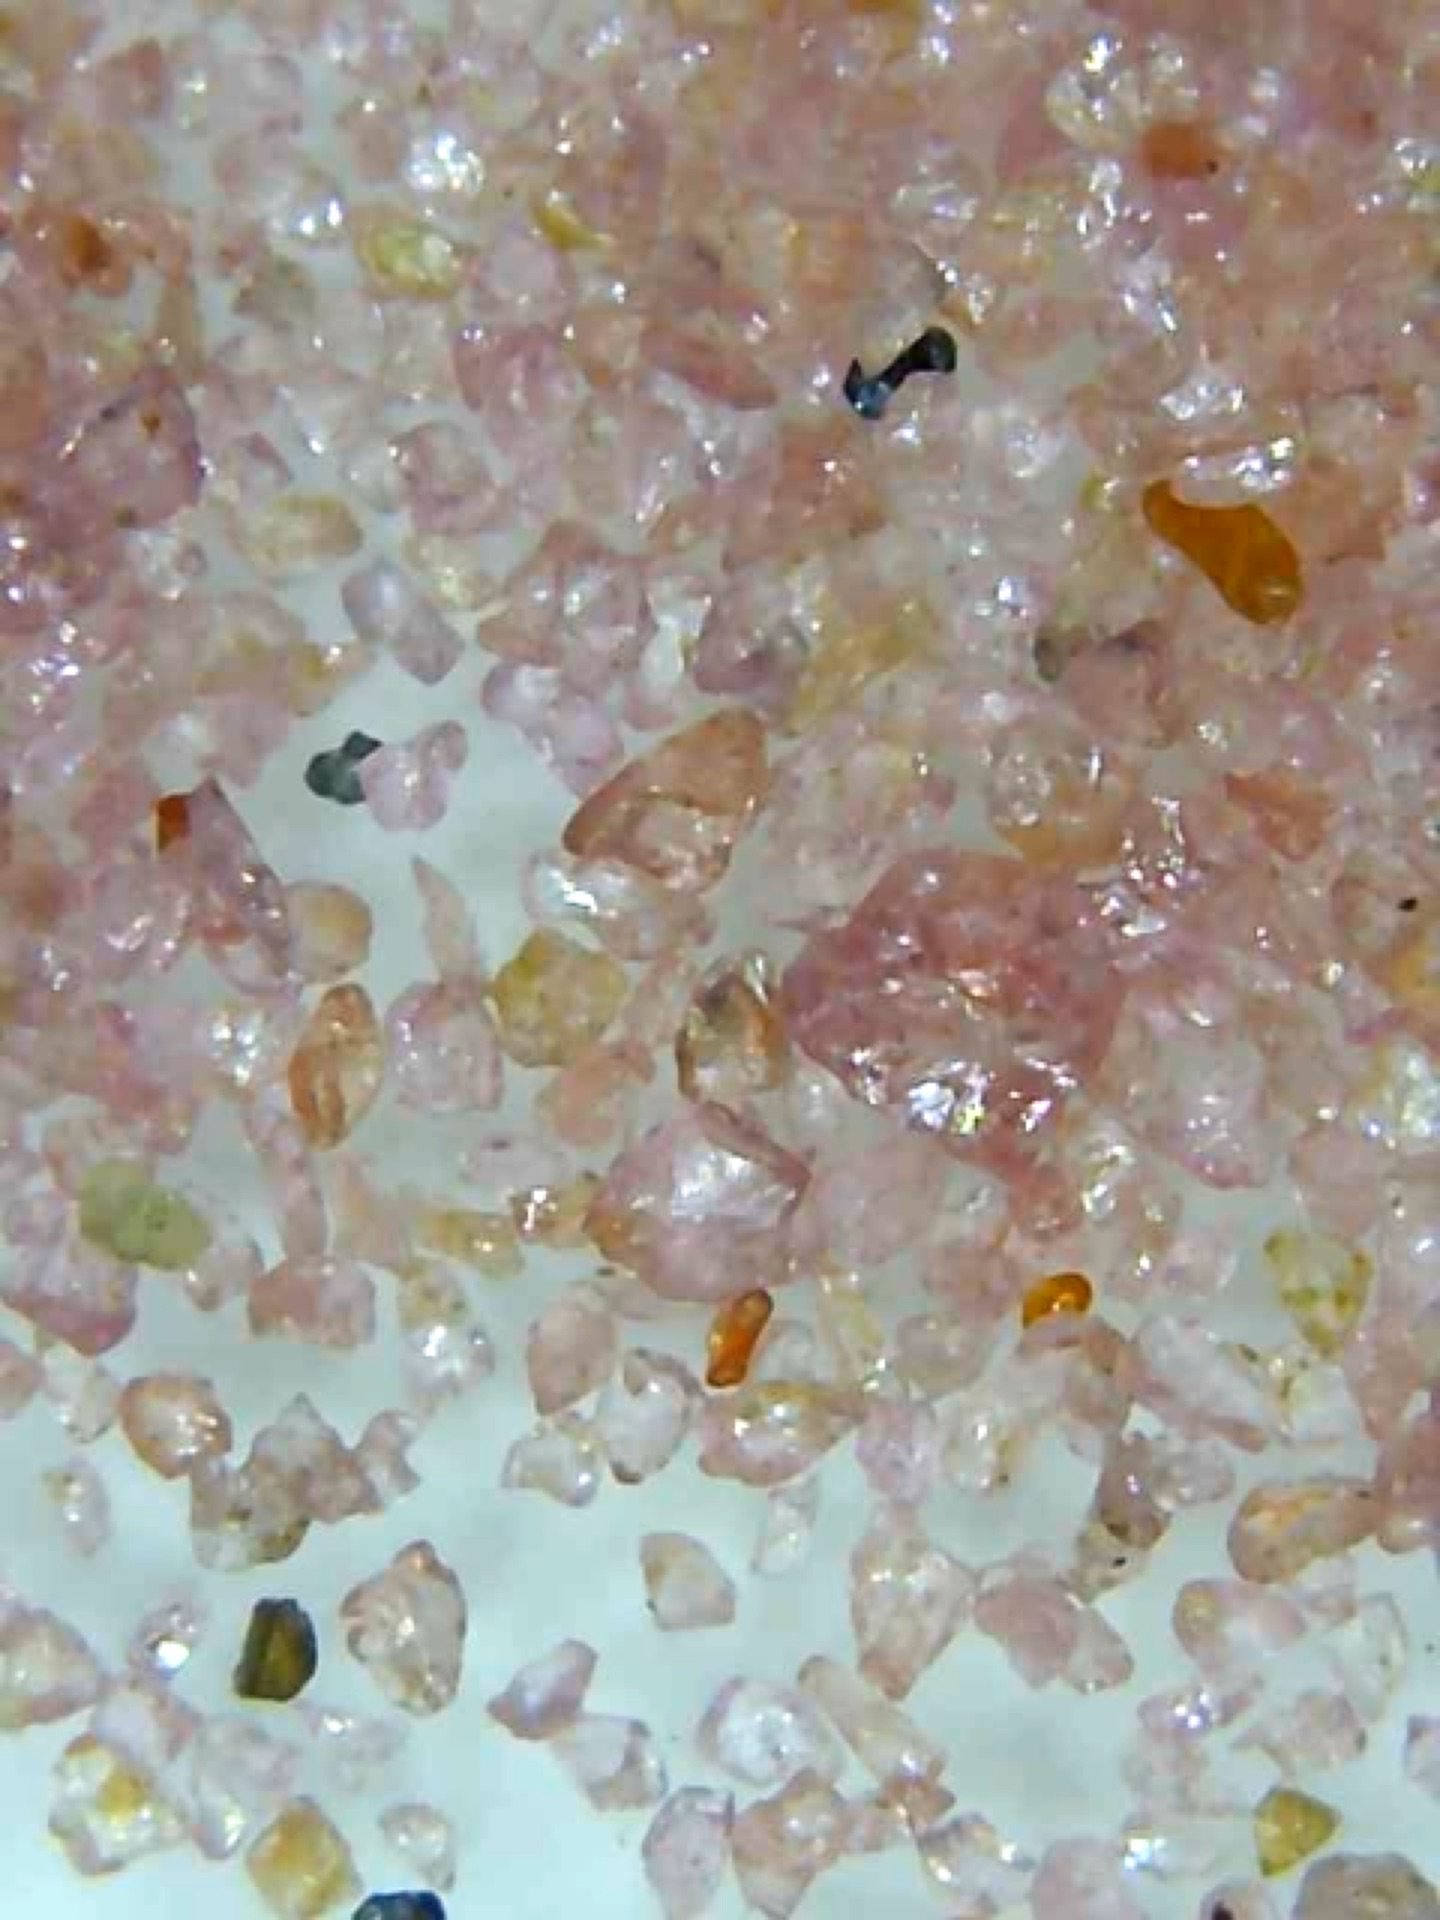 magnifyed pink sand on a glass slide